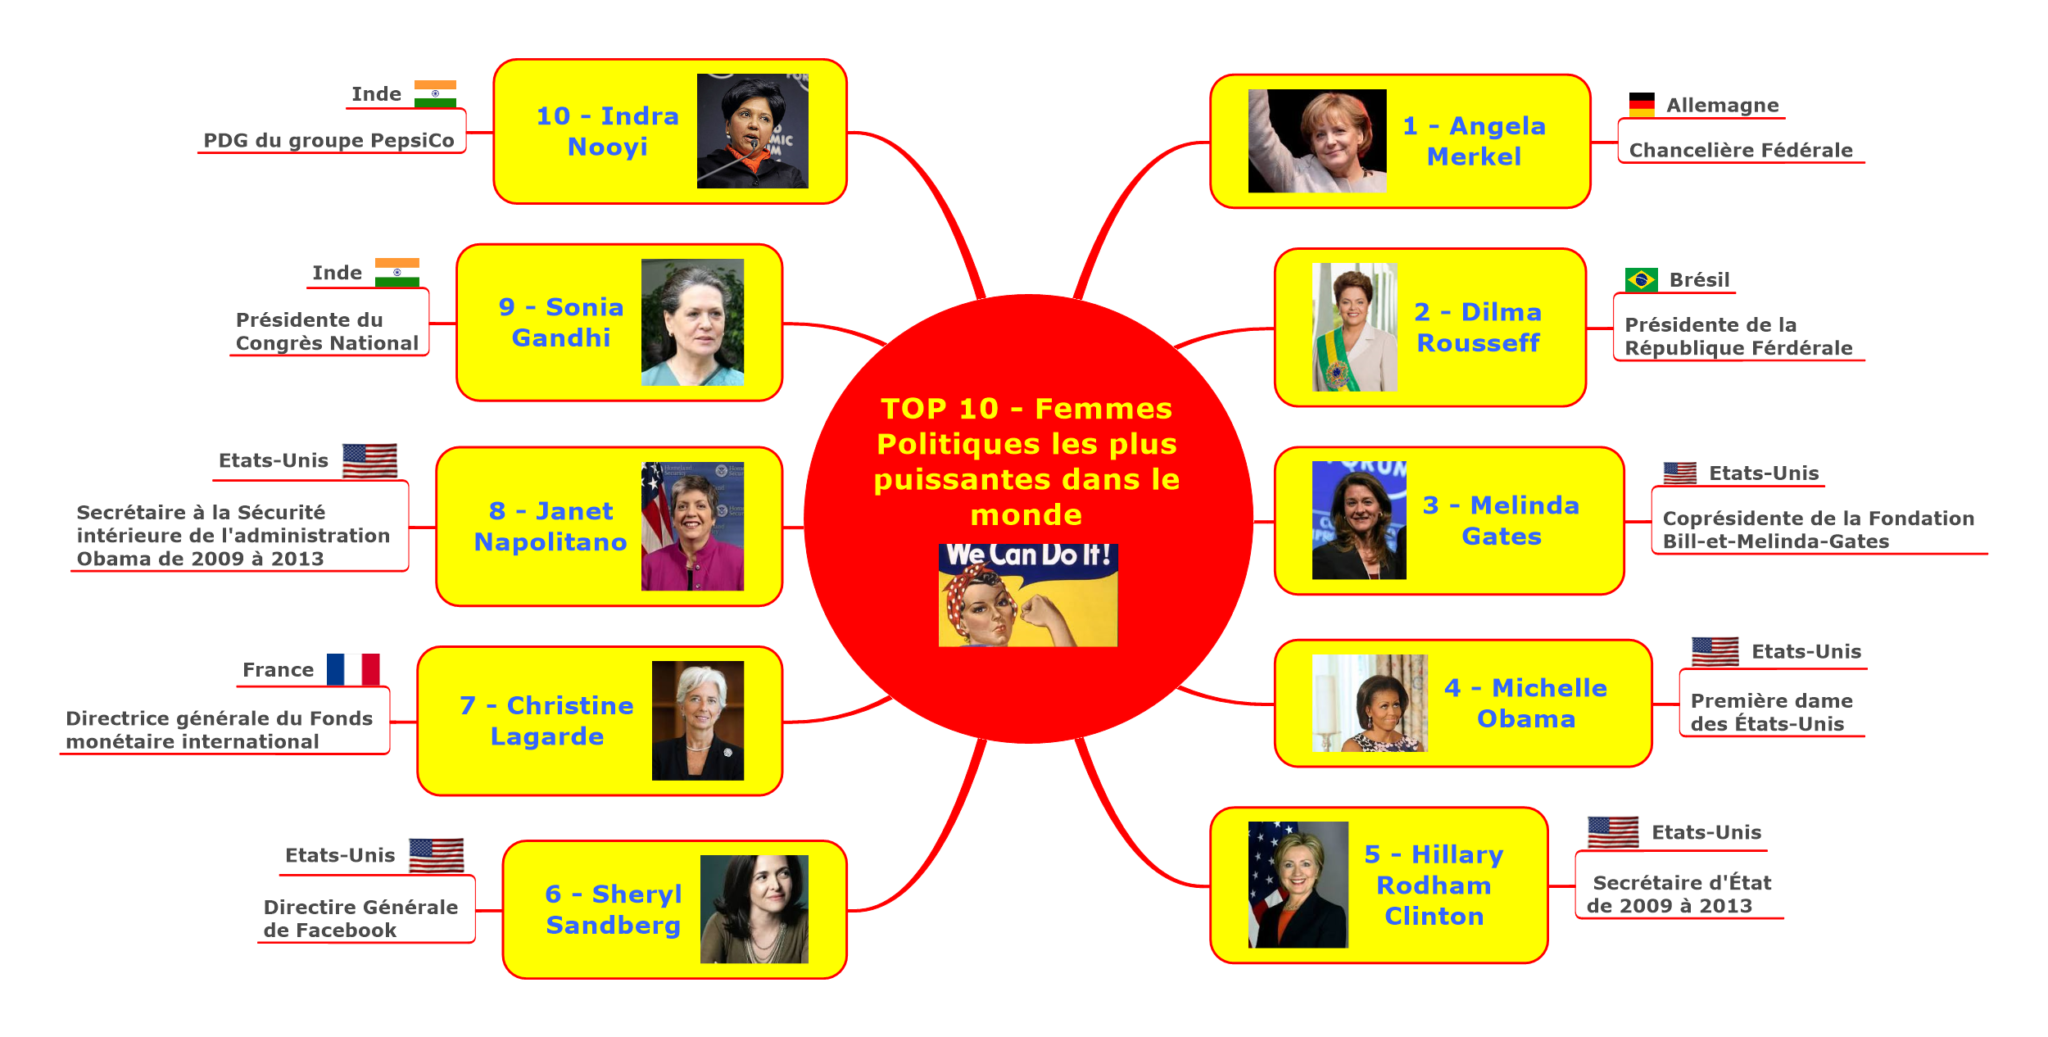 TOP 10 - Femmes Politiques les plus puissantes dans le monde